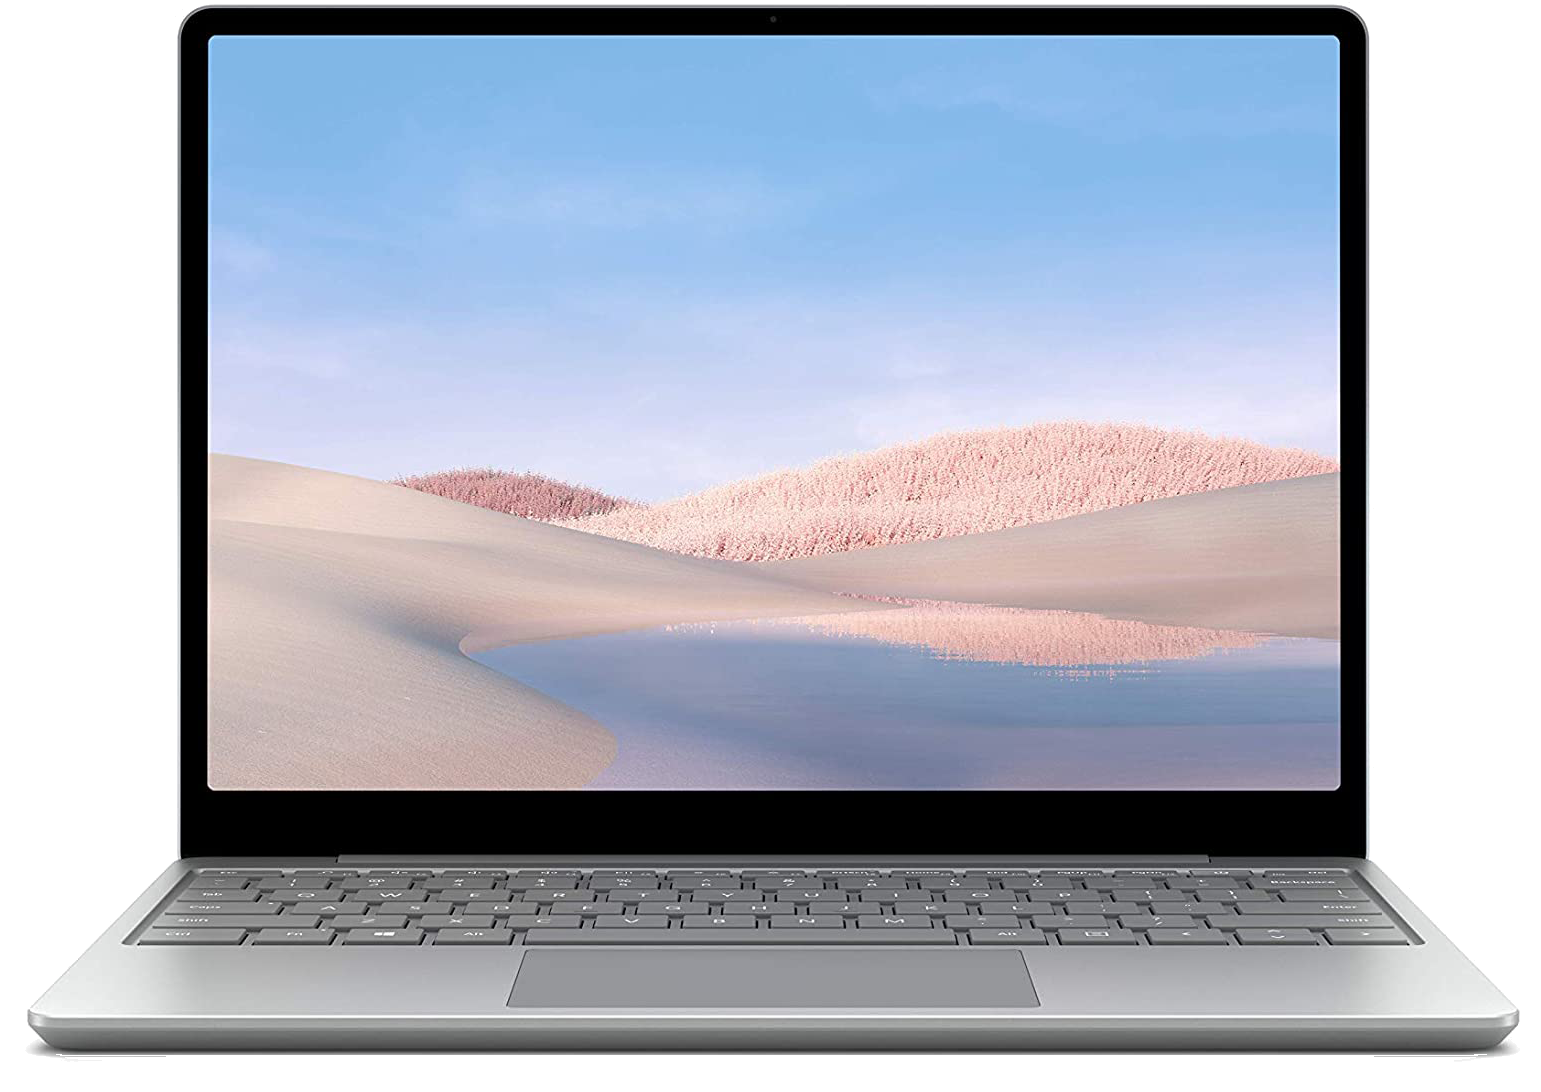 Microsoft Surface Laptop Go 12,4" i5-1035G1 8 GB RAM 256 GB SSD W10 grau - Ohne Vertrag